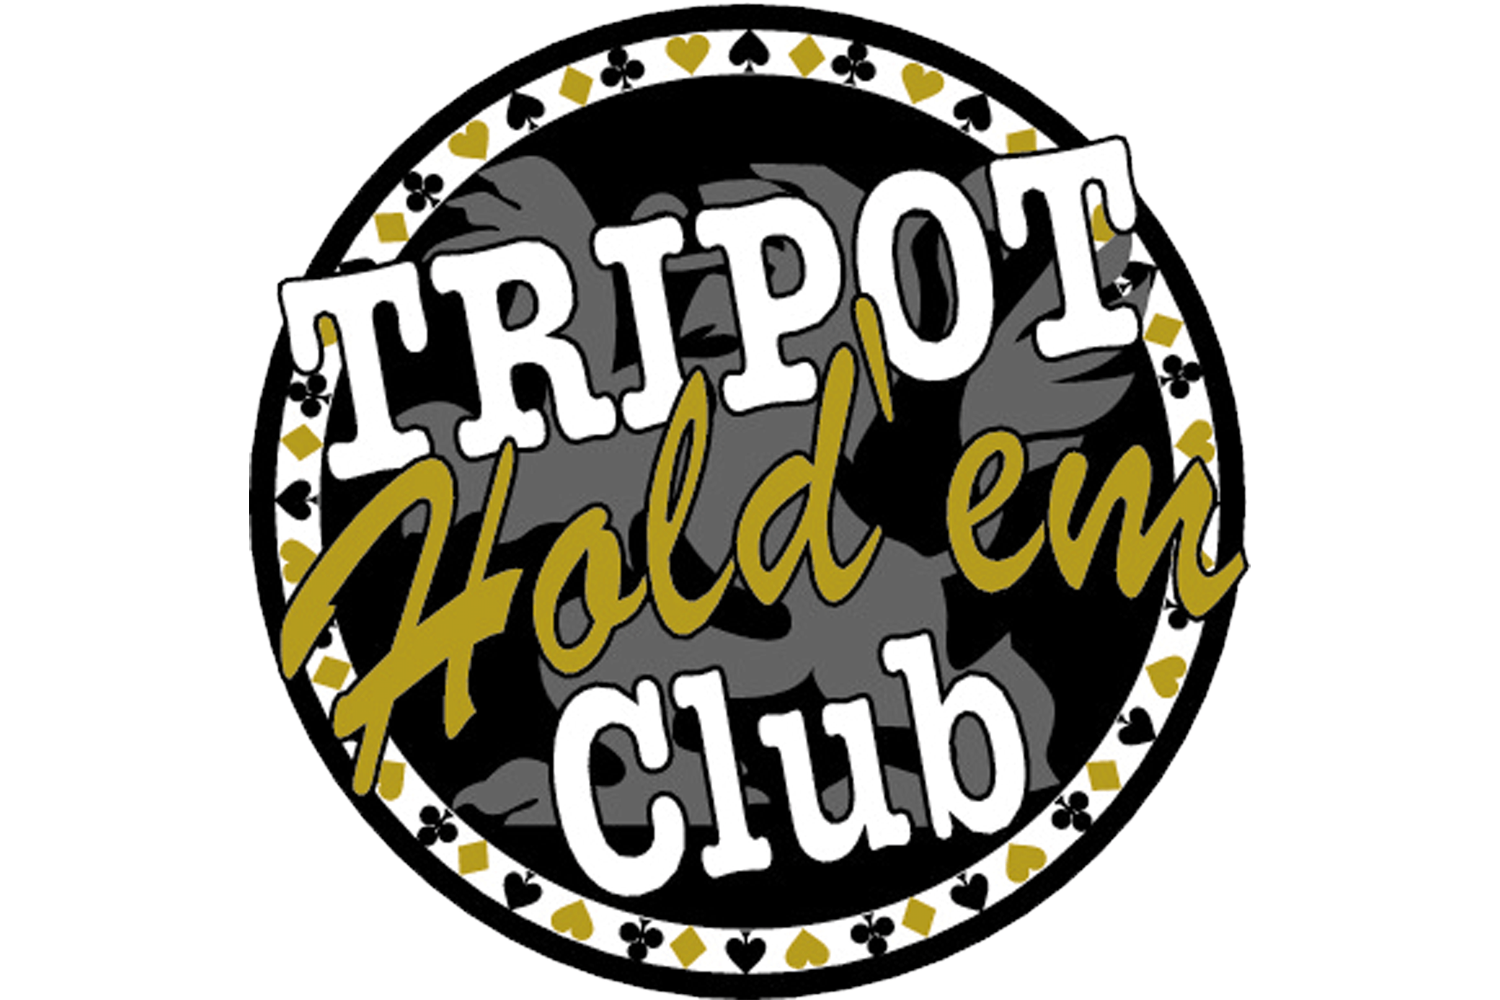 Tripot Holdem Club